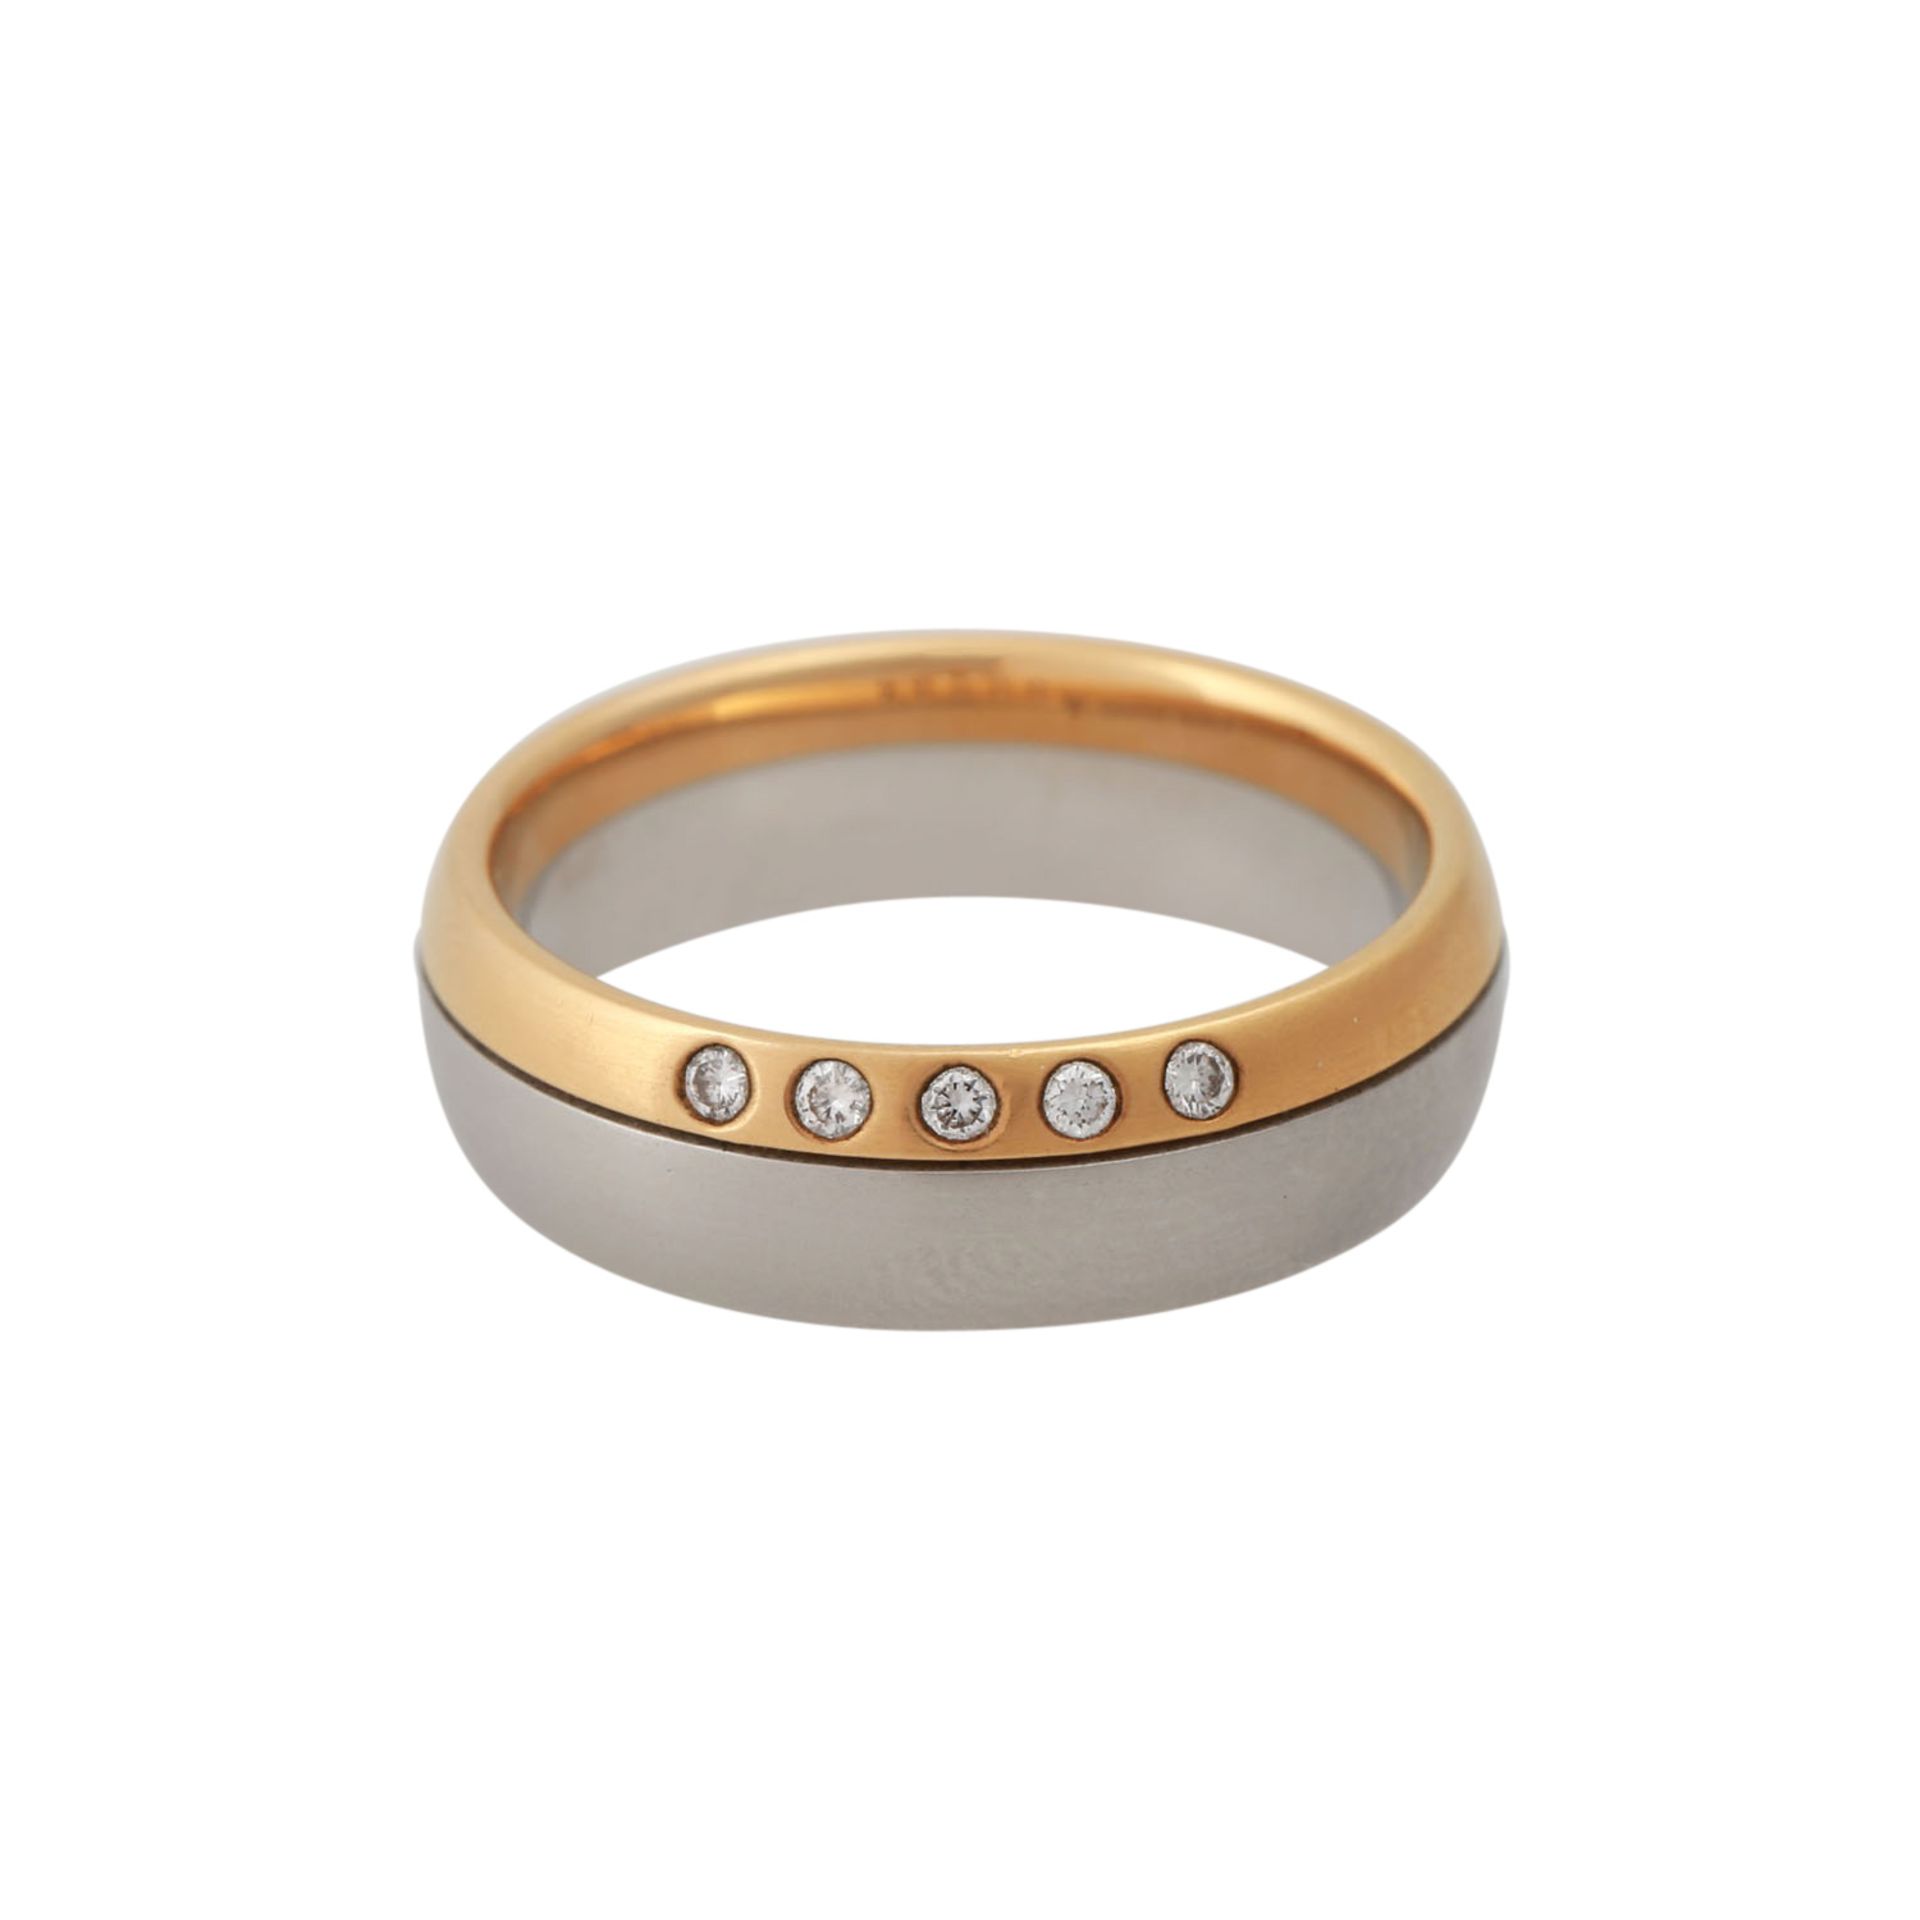 CHRISTIAN BAUER Ring mit 5 kleinen Brillanten, zus. ca. 0,07 ct